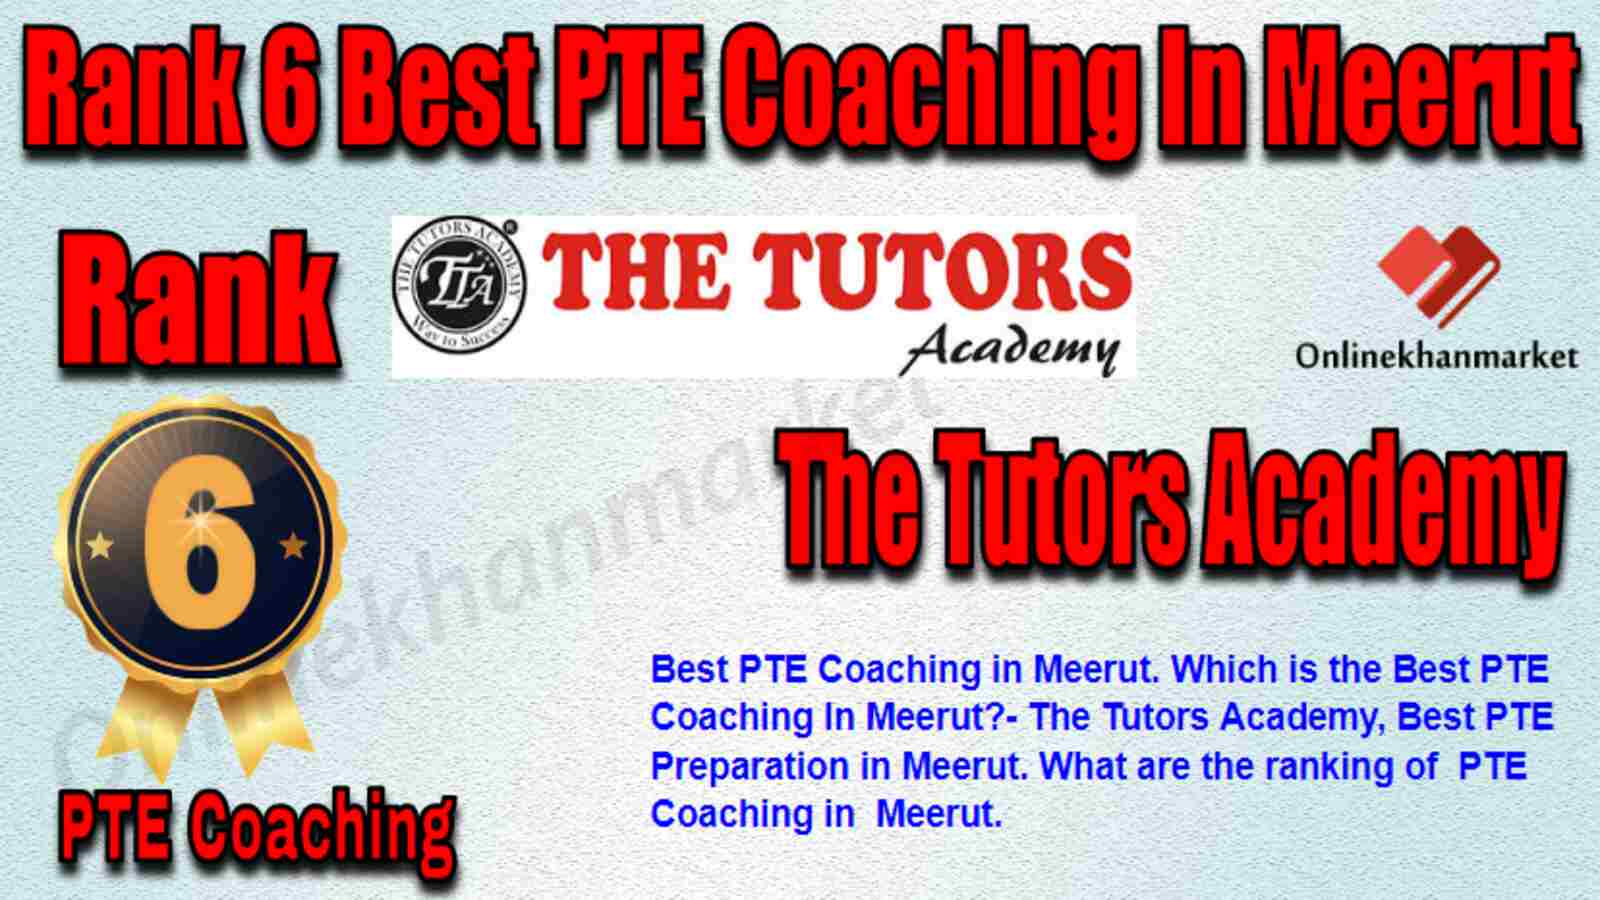 Rank 6 Best PTE Coaching in Meerut